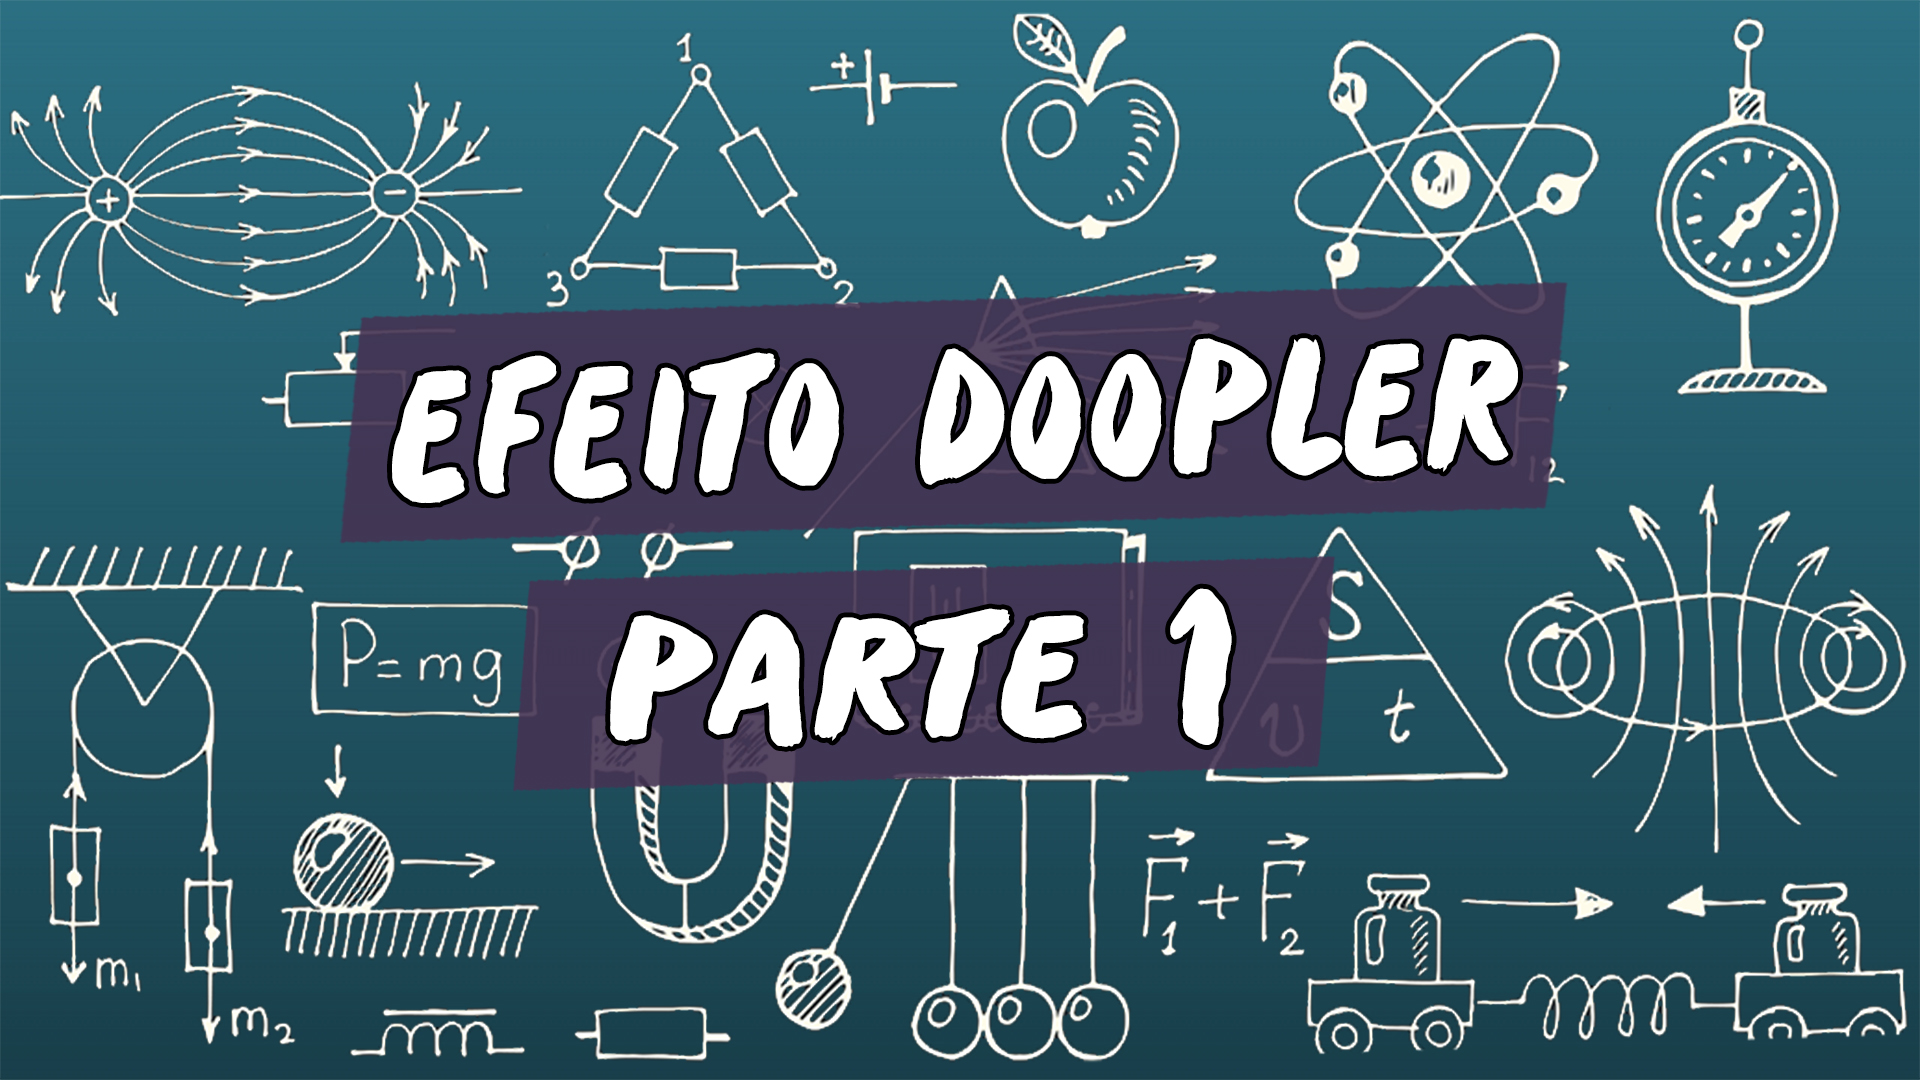 "Efeito Doppler" escrito sobre ilustração de símbolos matemáticos